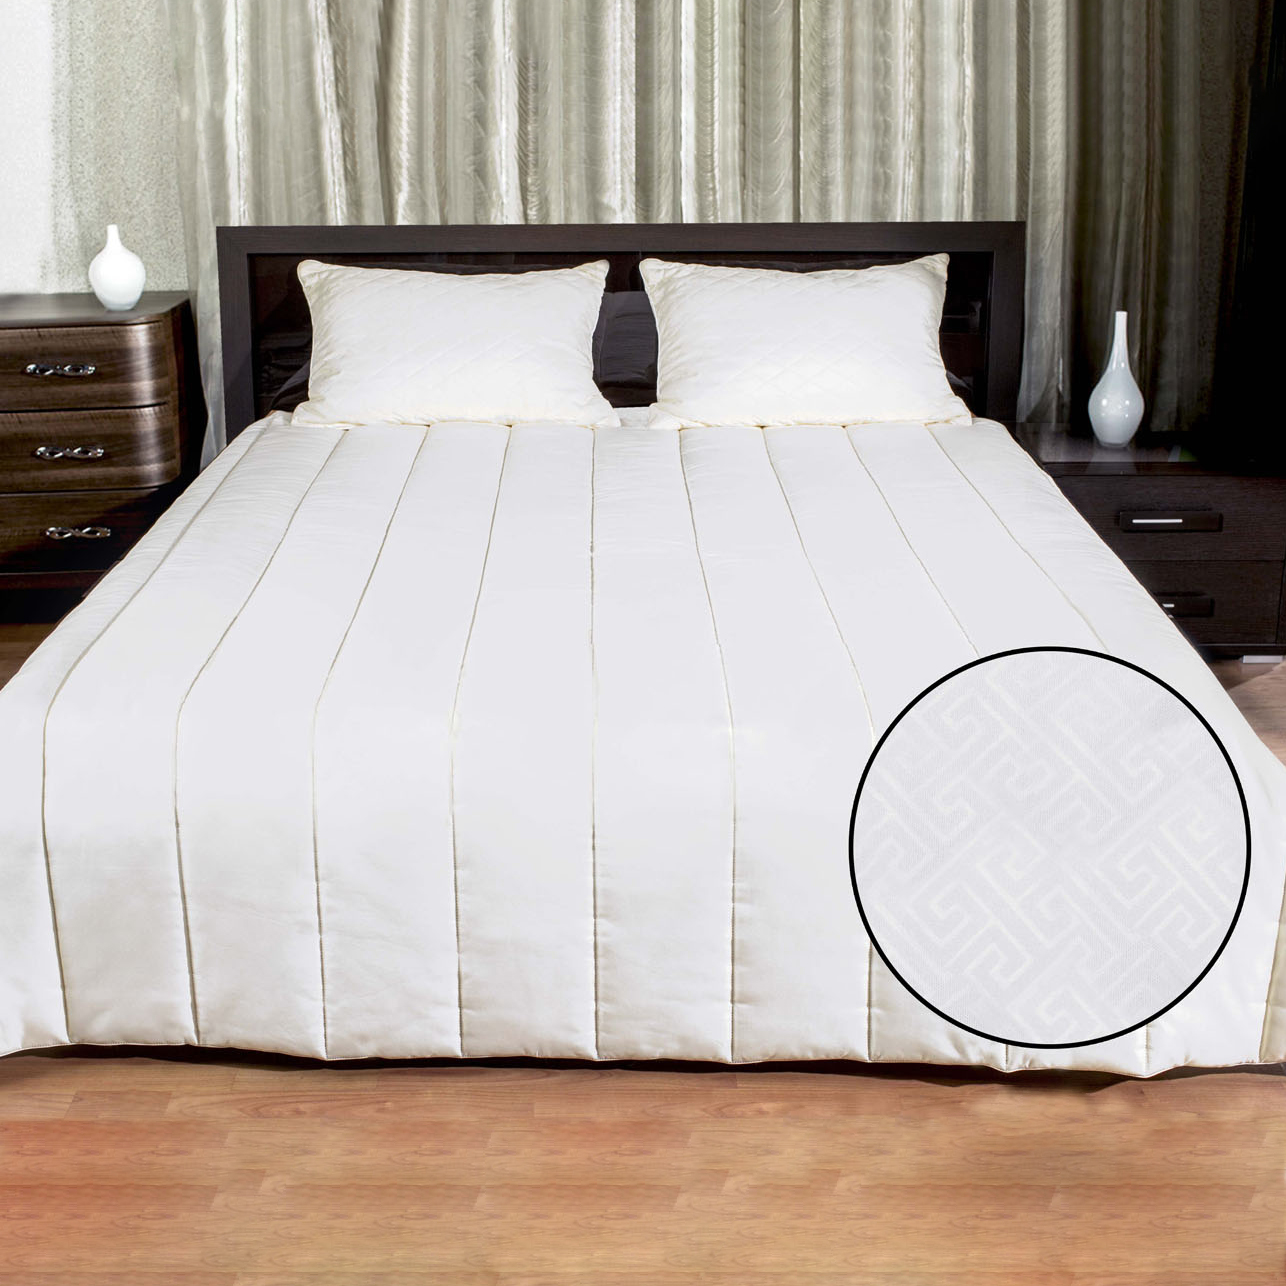 Одеяло Teagan (140х205 см), размер 140х205 см, цвет белый pve335740 Одеяло Teagan (140х205 см) - фото 1